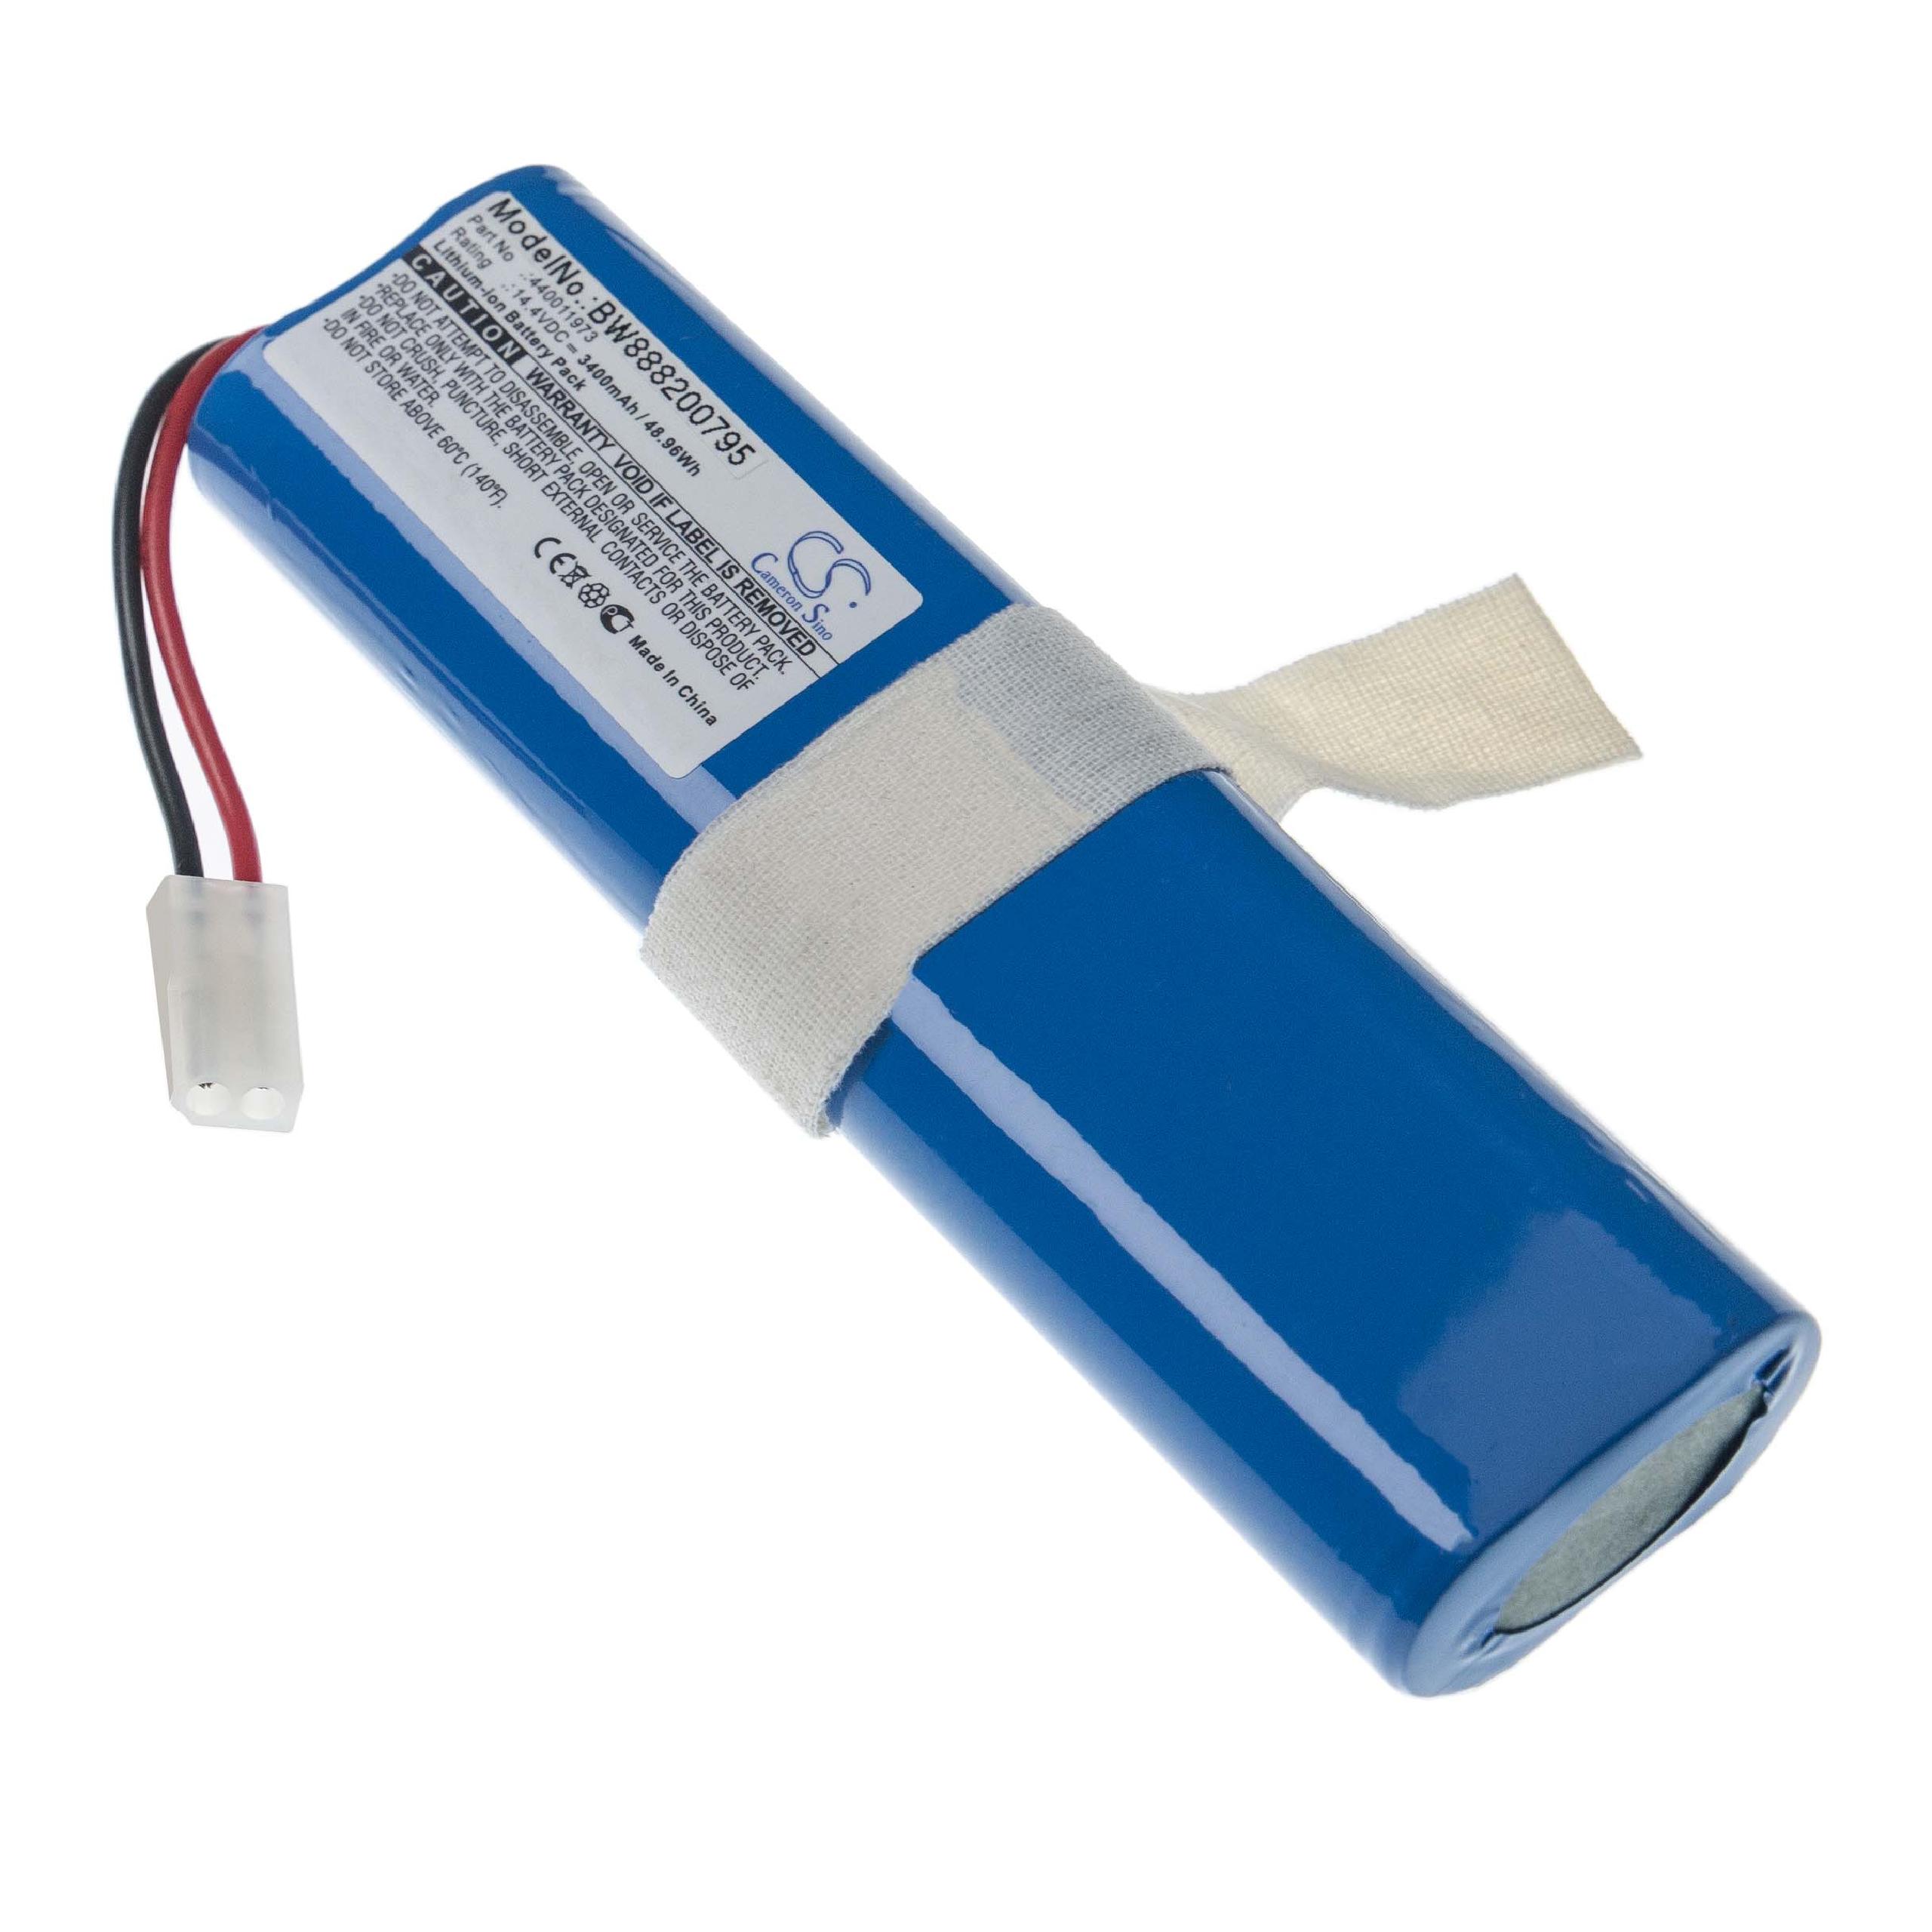 Batterie remplace Hoover 440011973 pour robot aspirateur - 3400mAh 14,4V Li-ion